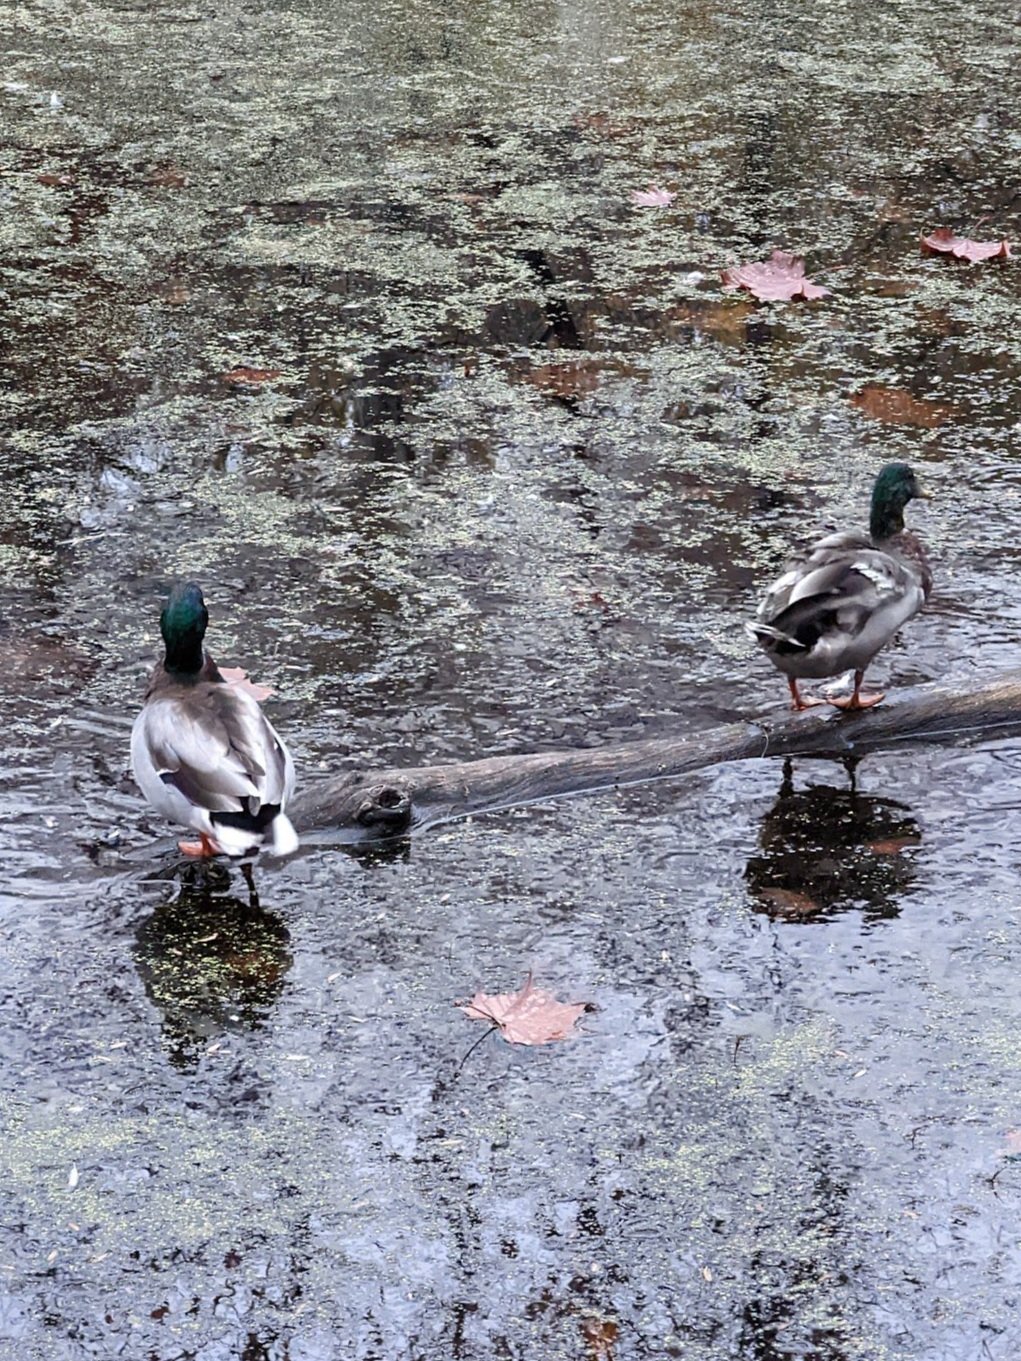 ducks.jpg